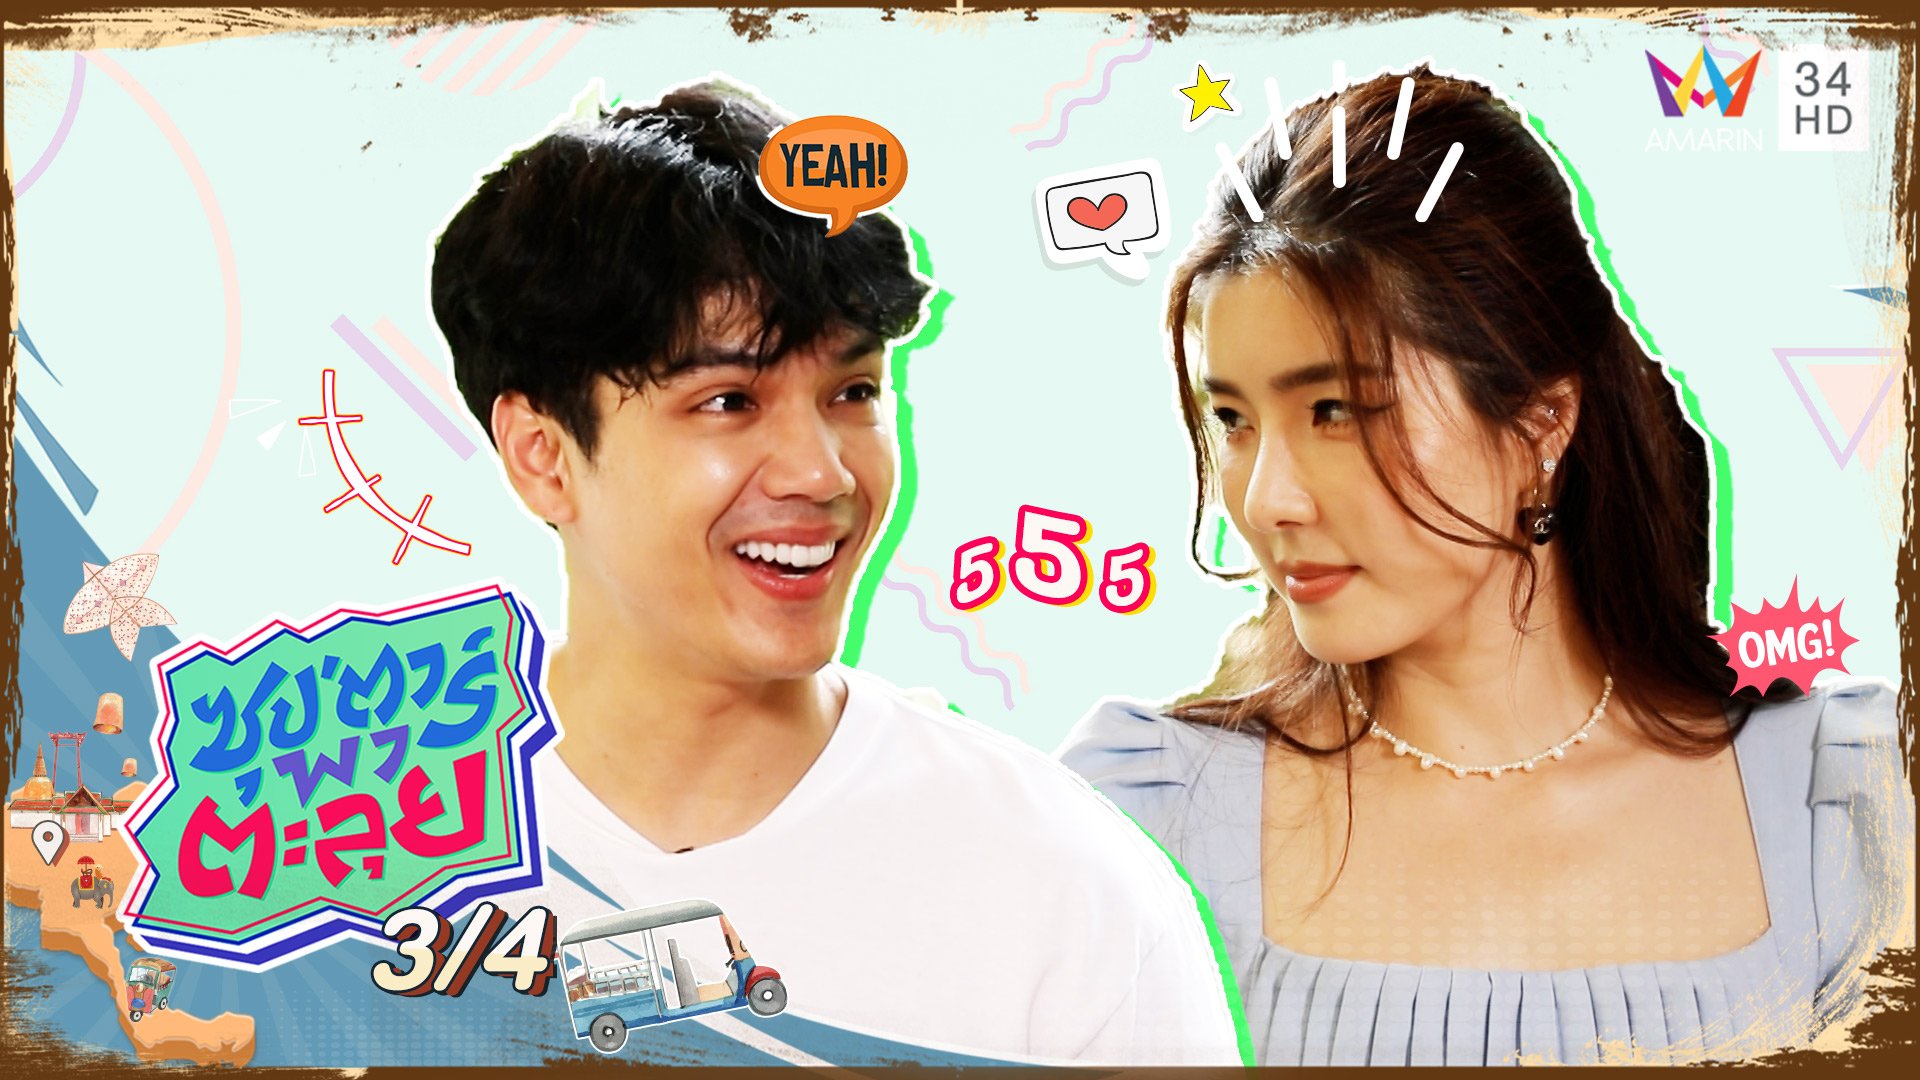 วัดความเป็นไทย "จียอน" ทายสำนวนสุภาษิตไทย ฮามาก! | ซุปตาร์พาตะลุย | 25 ส.ค. 65 (3/4) | AMARIN TVHD34